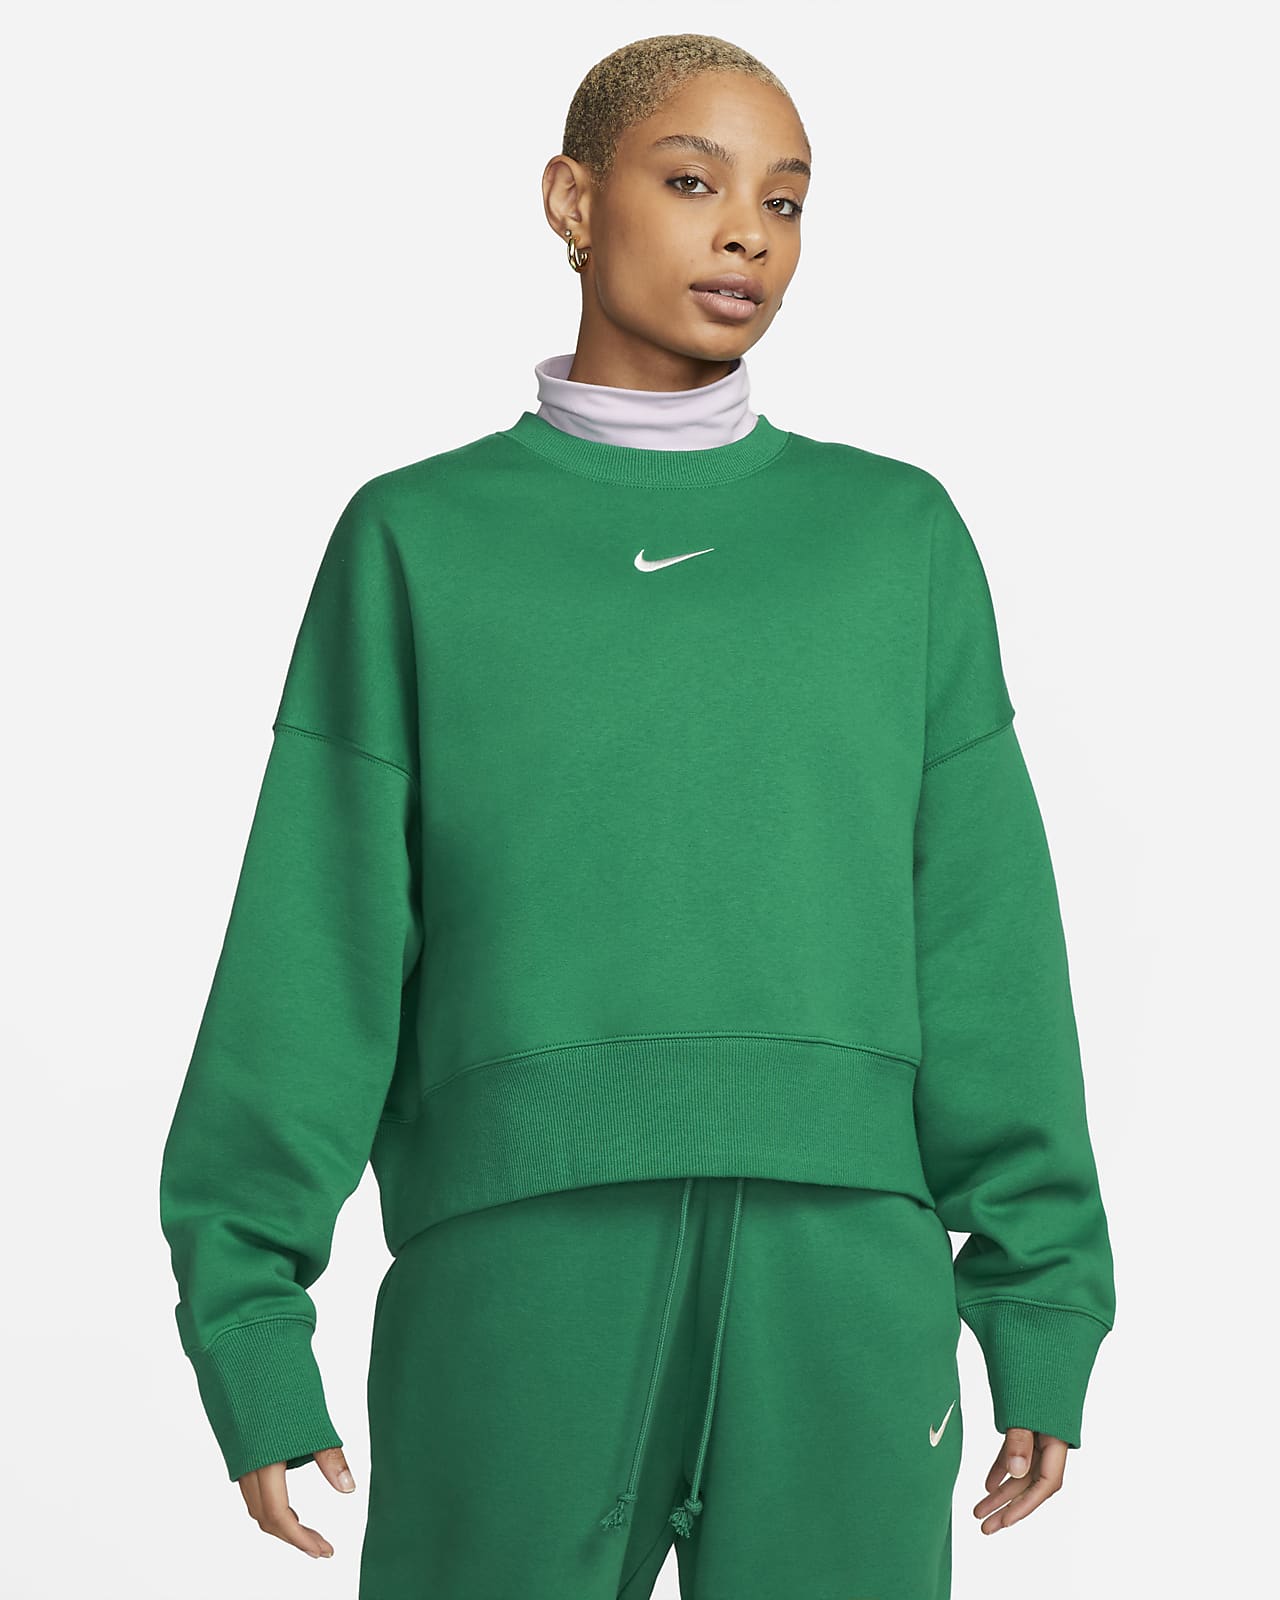 Dámská volnější flísová mikina s kulatým výstřihem Nike Sportswear Phoenix (větší velikost)